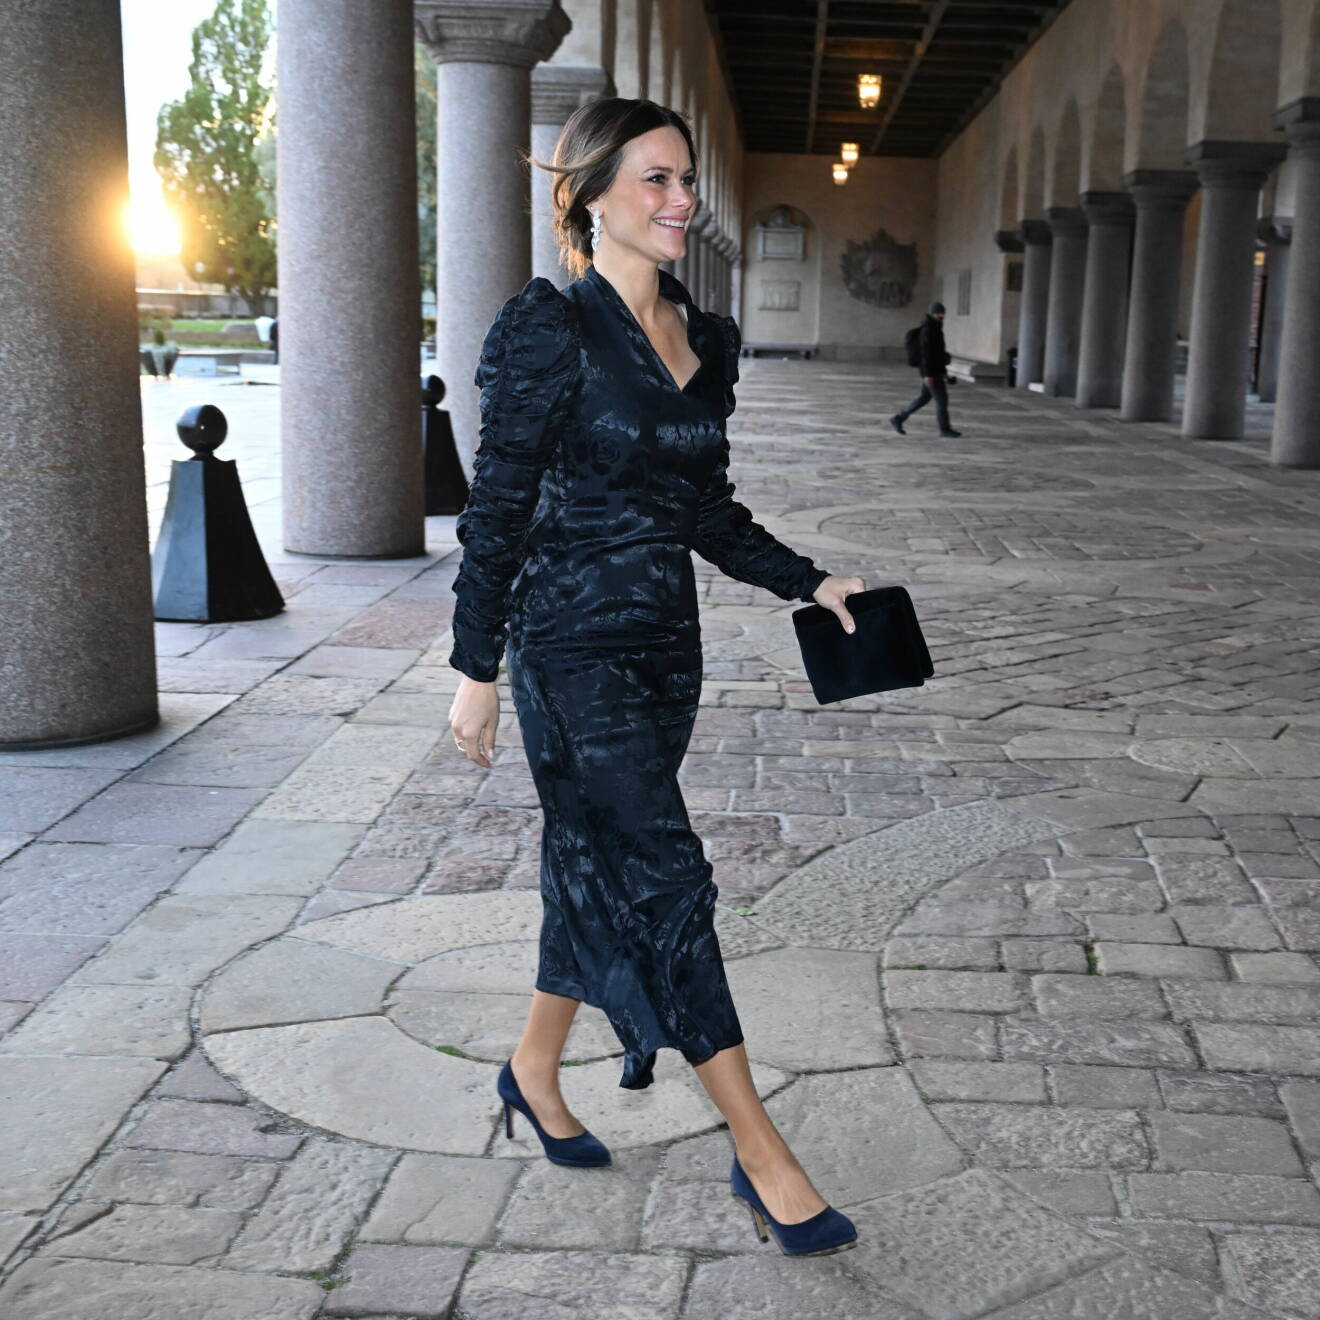 Prinsessan Sofia anländer till Stockholms stadshus